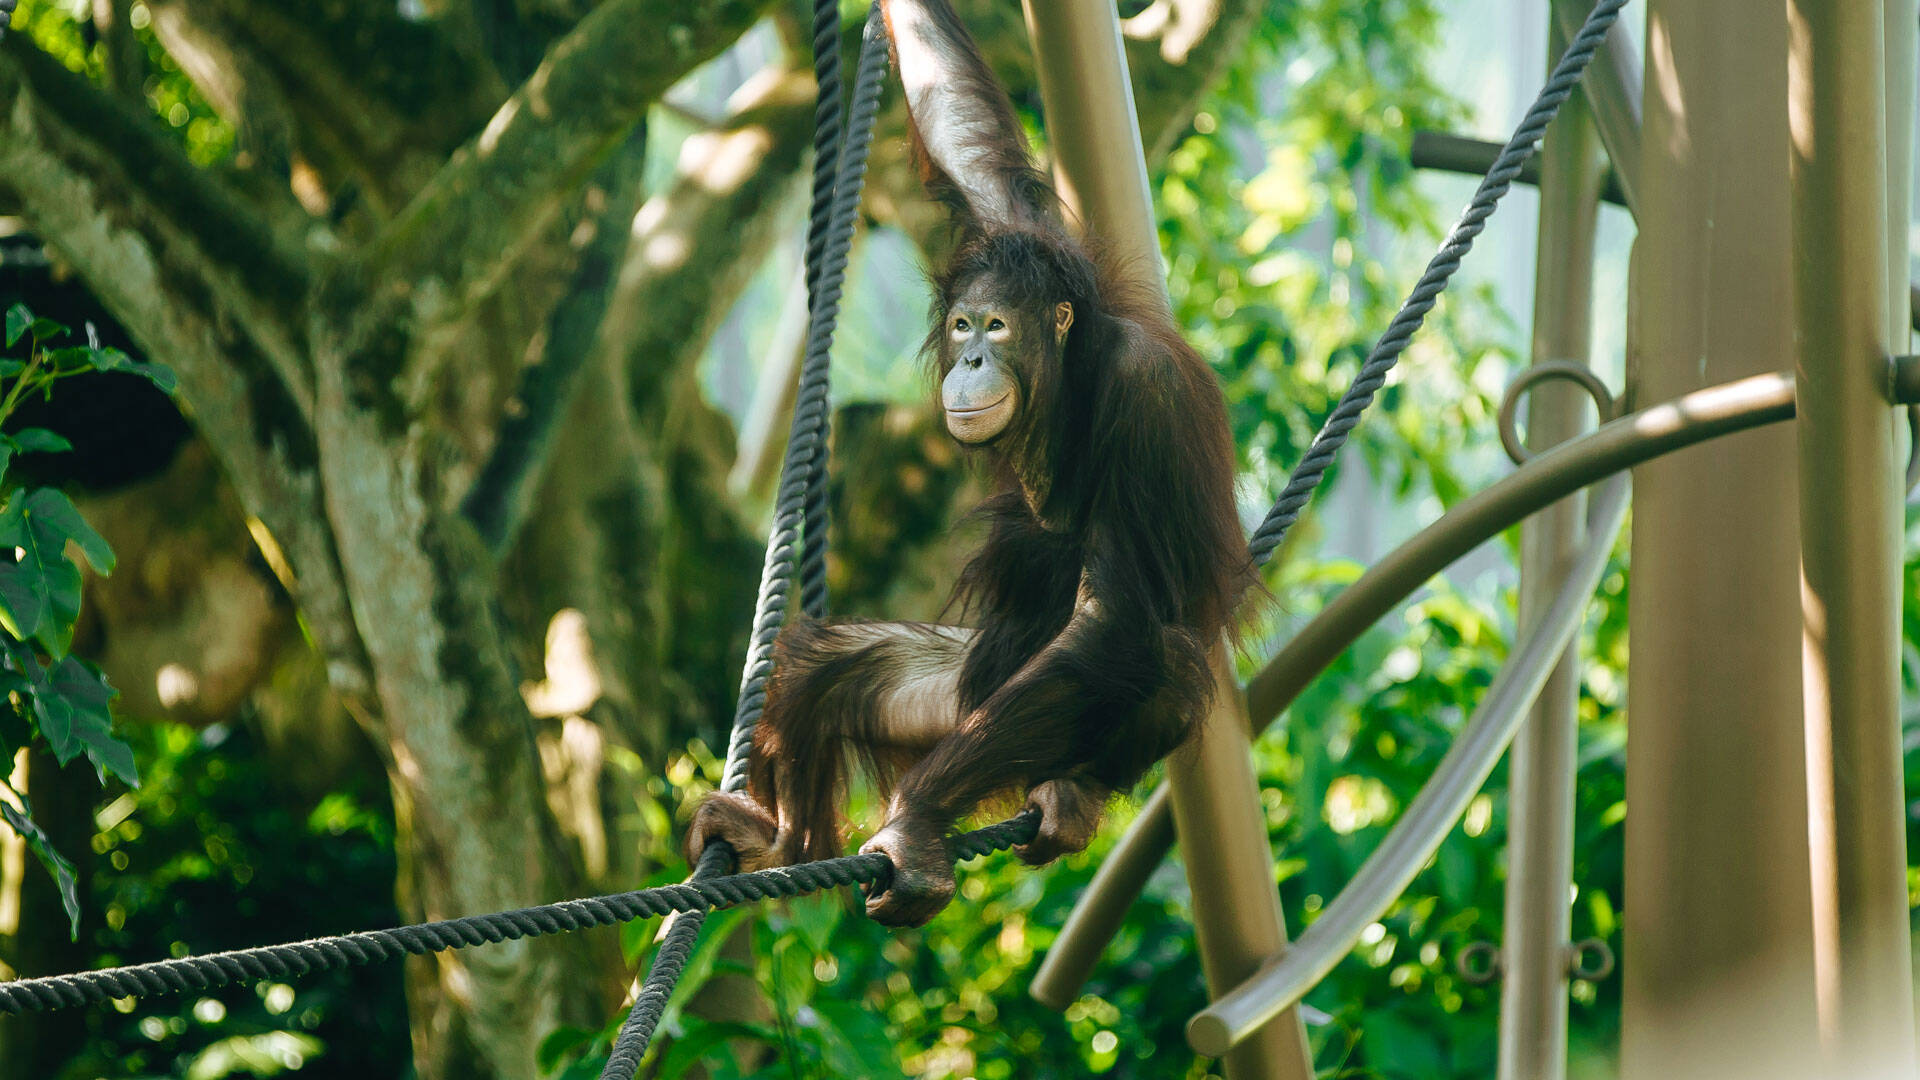 https://cdn.aucklandunlimited.com/zoo/assets/media/orangutan-daya-gallery-1.jpg